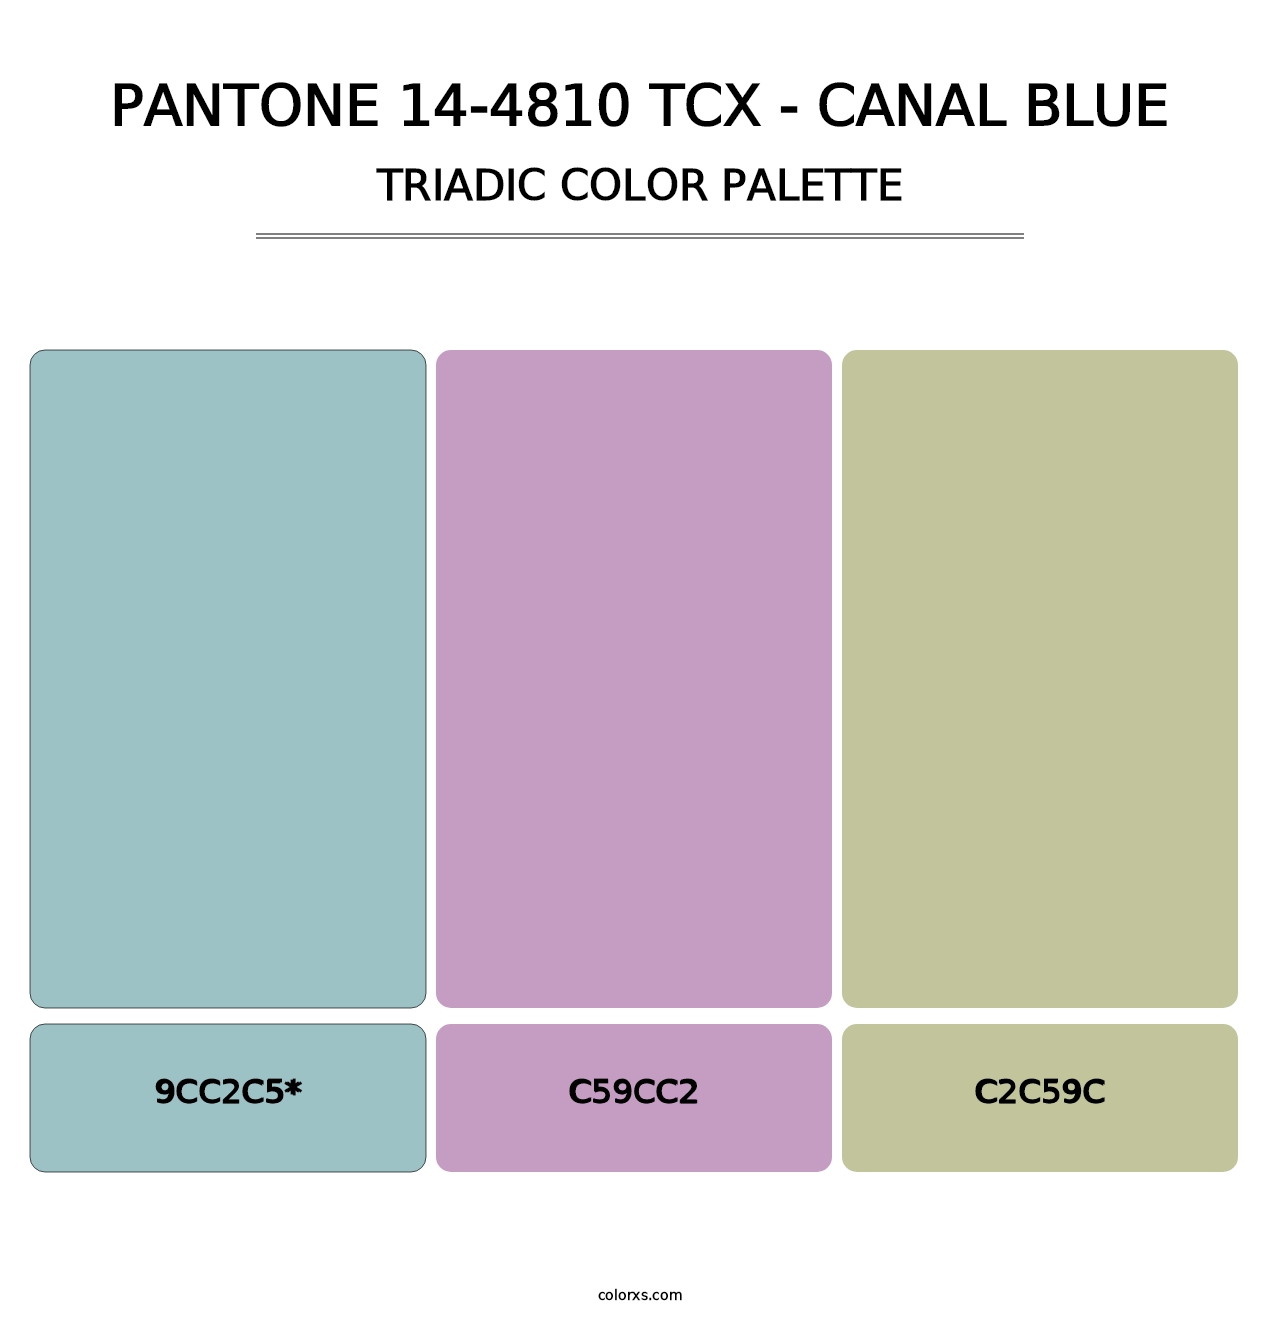 PANTONE 14-4810 TCX - Canal Blue - Triadic Color Palette